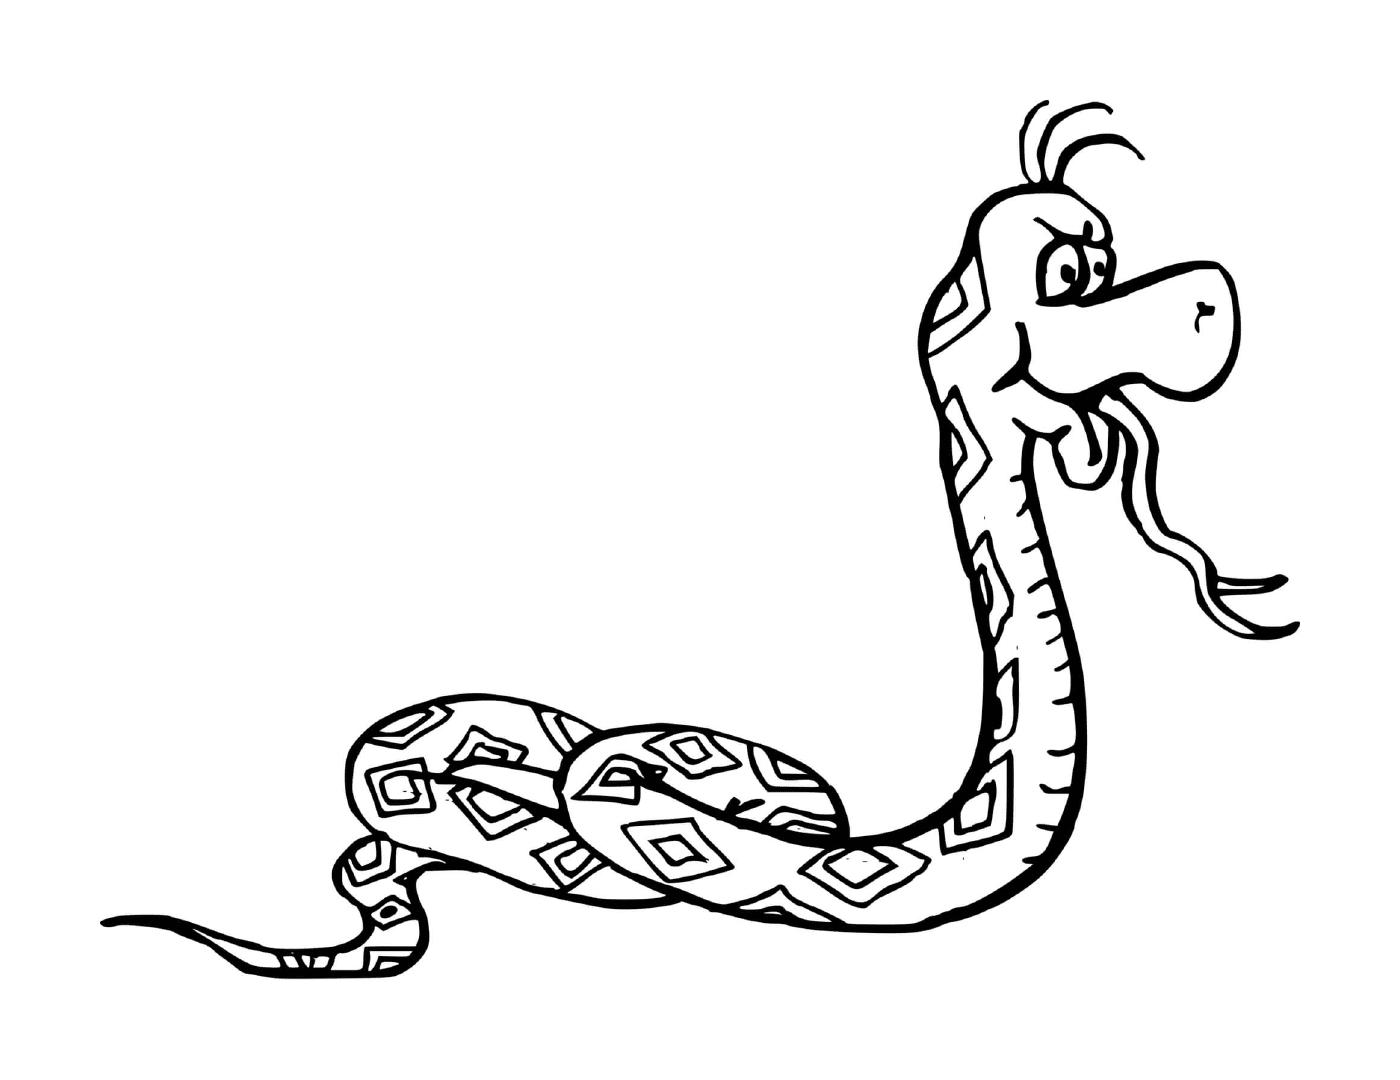  Змея дразнит язык 